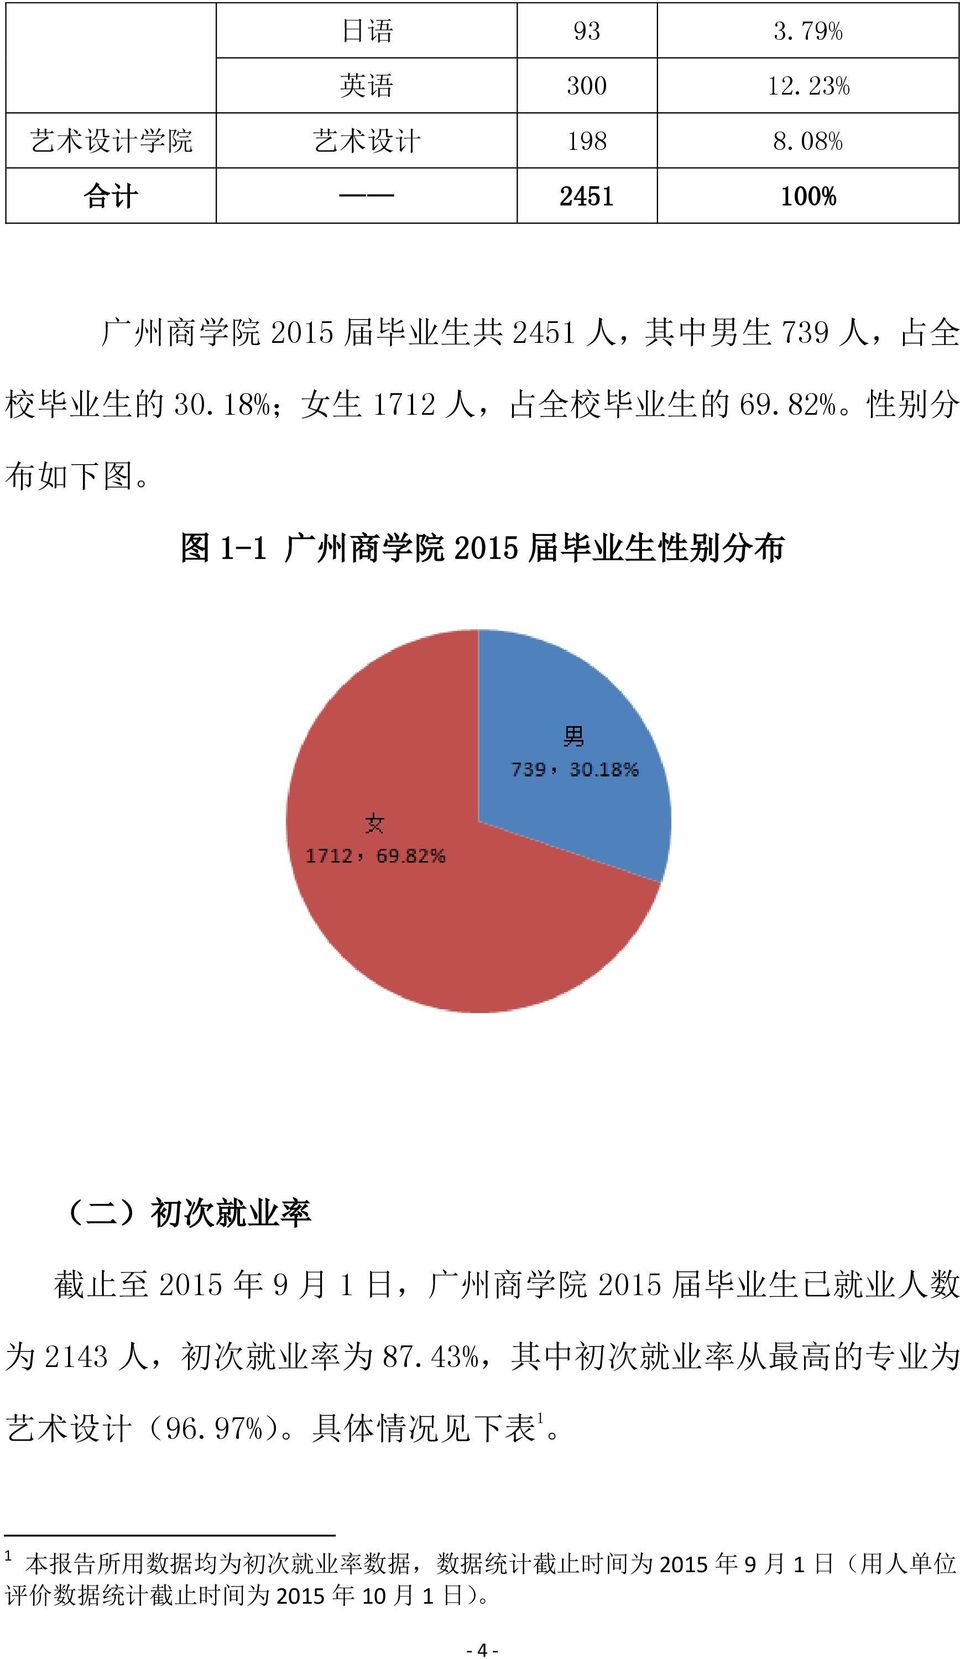 82% 性 别 分 布 如 下 图 图 1-1 广 州 商 学 院 2015 届 毕 业 生 性 别 分 布 ( 二 ) 初 次 就 业 率 截 止 至 2015 年 9 月 1 日, 广 州 商 学 院 2015 届 毕 业 生 已 就 业 人 数 为